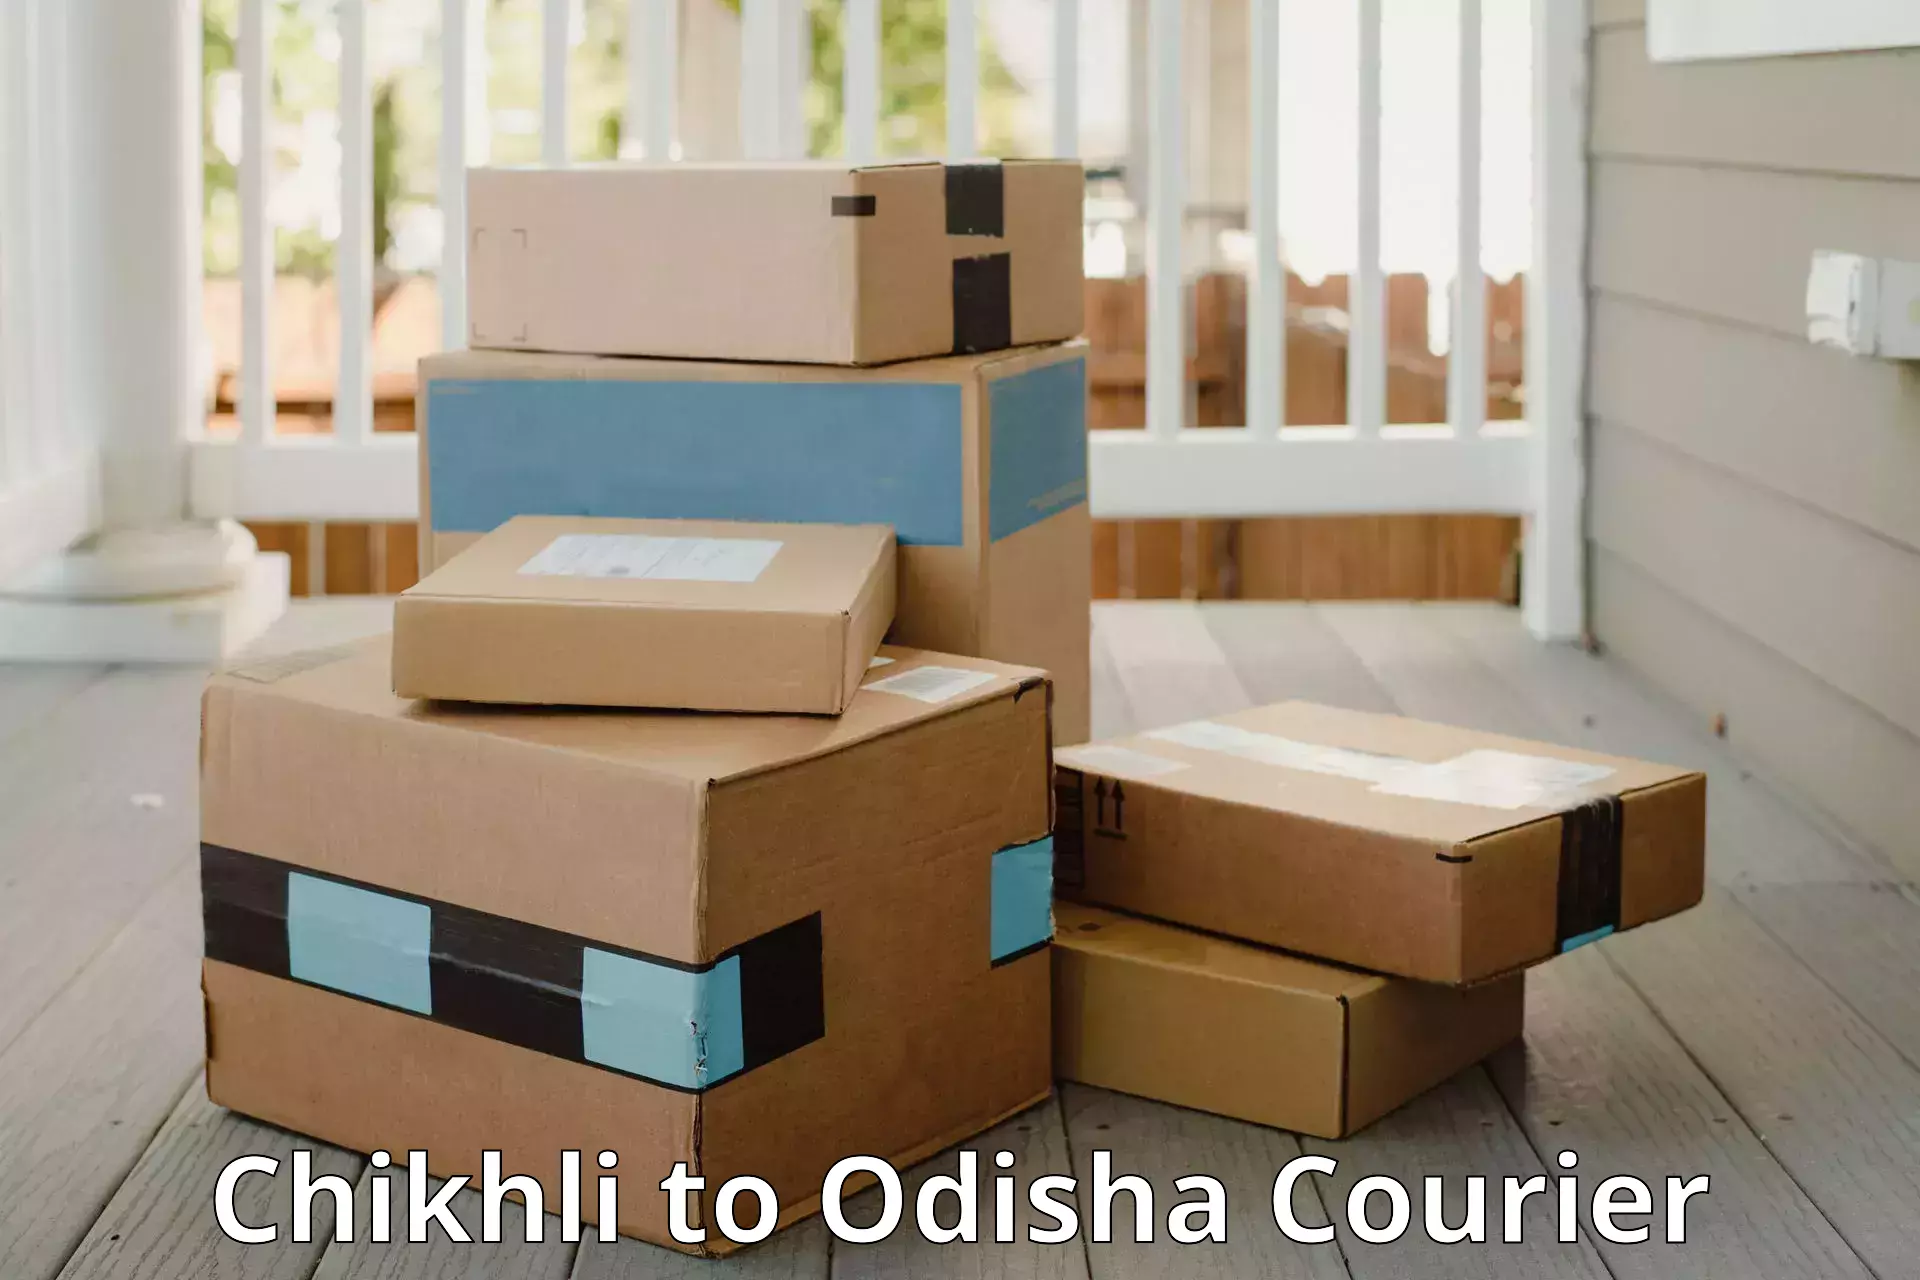 Safe luggage delivery Chikhli to Odisha